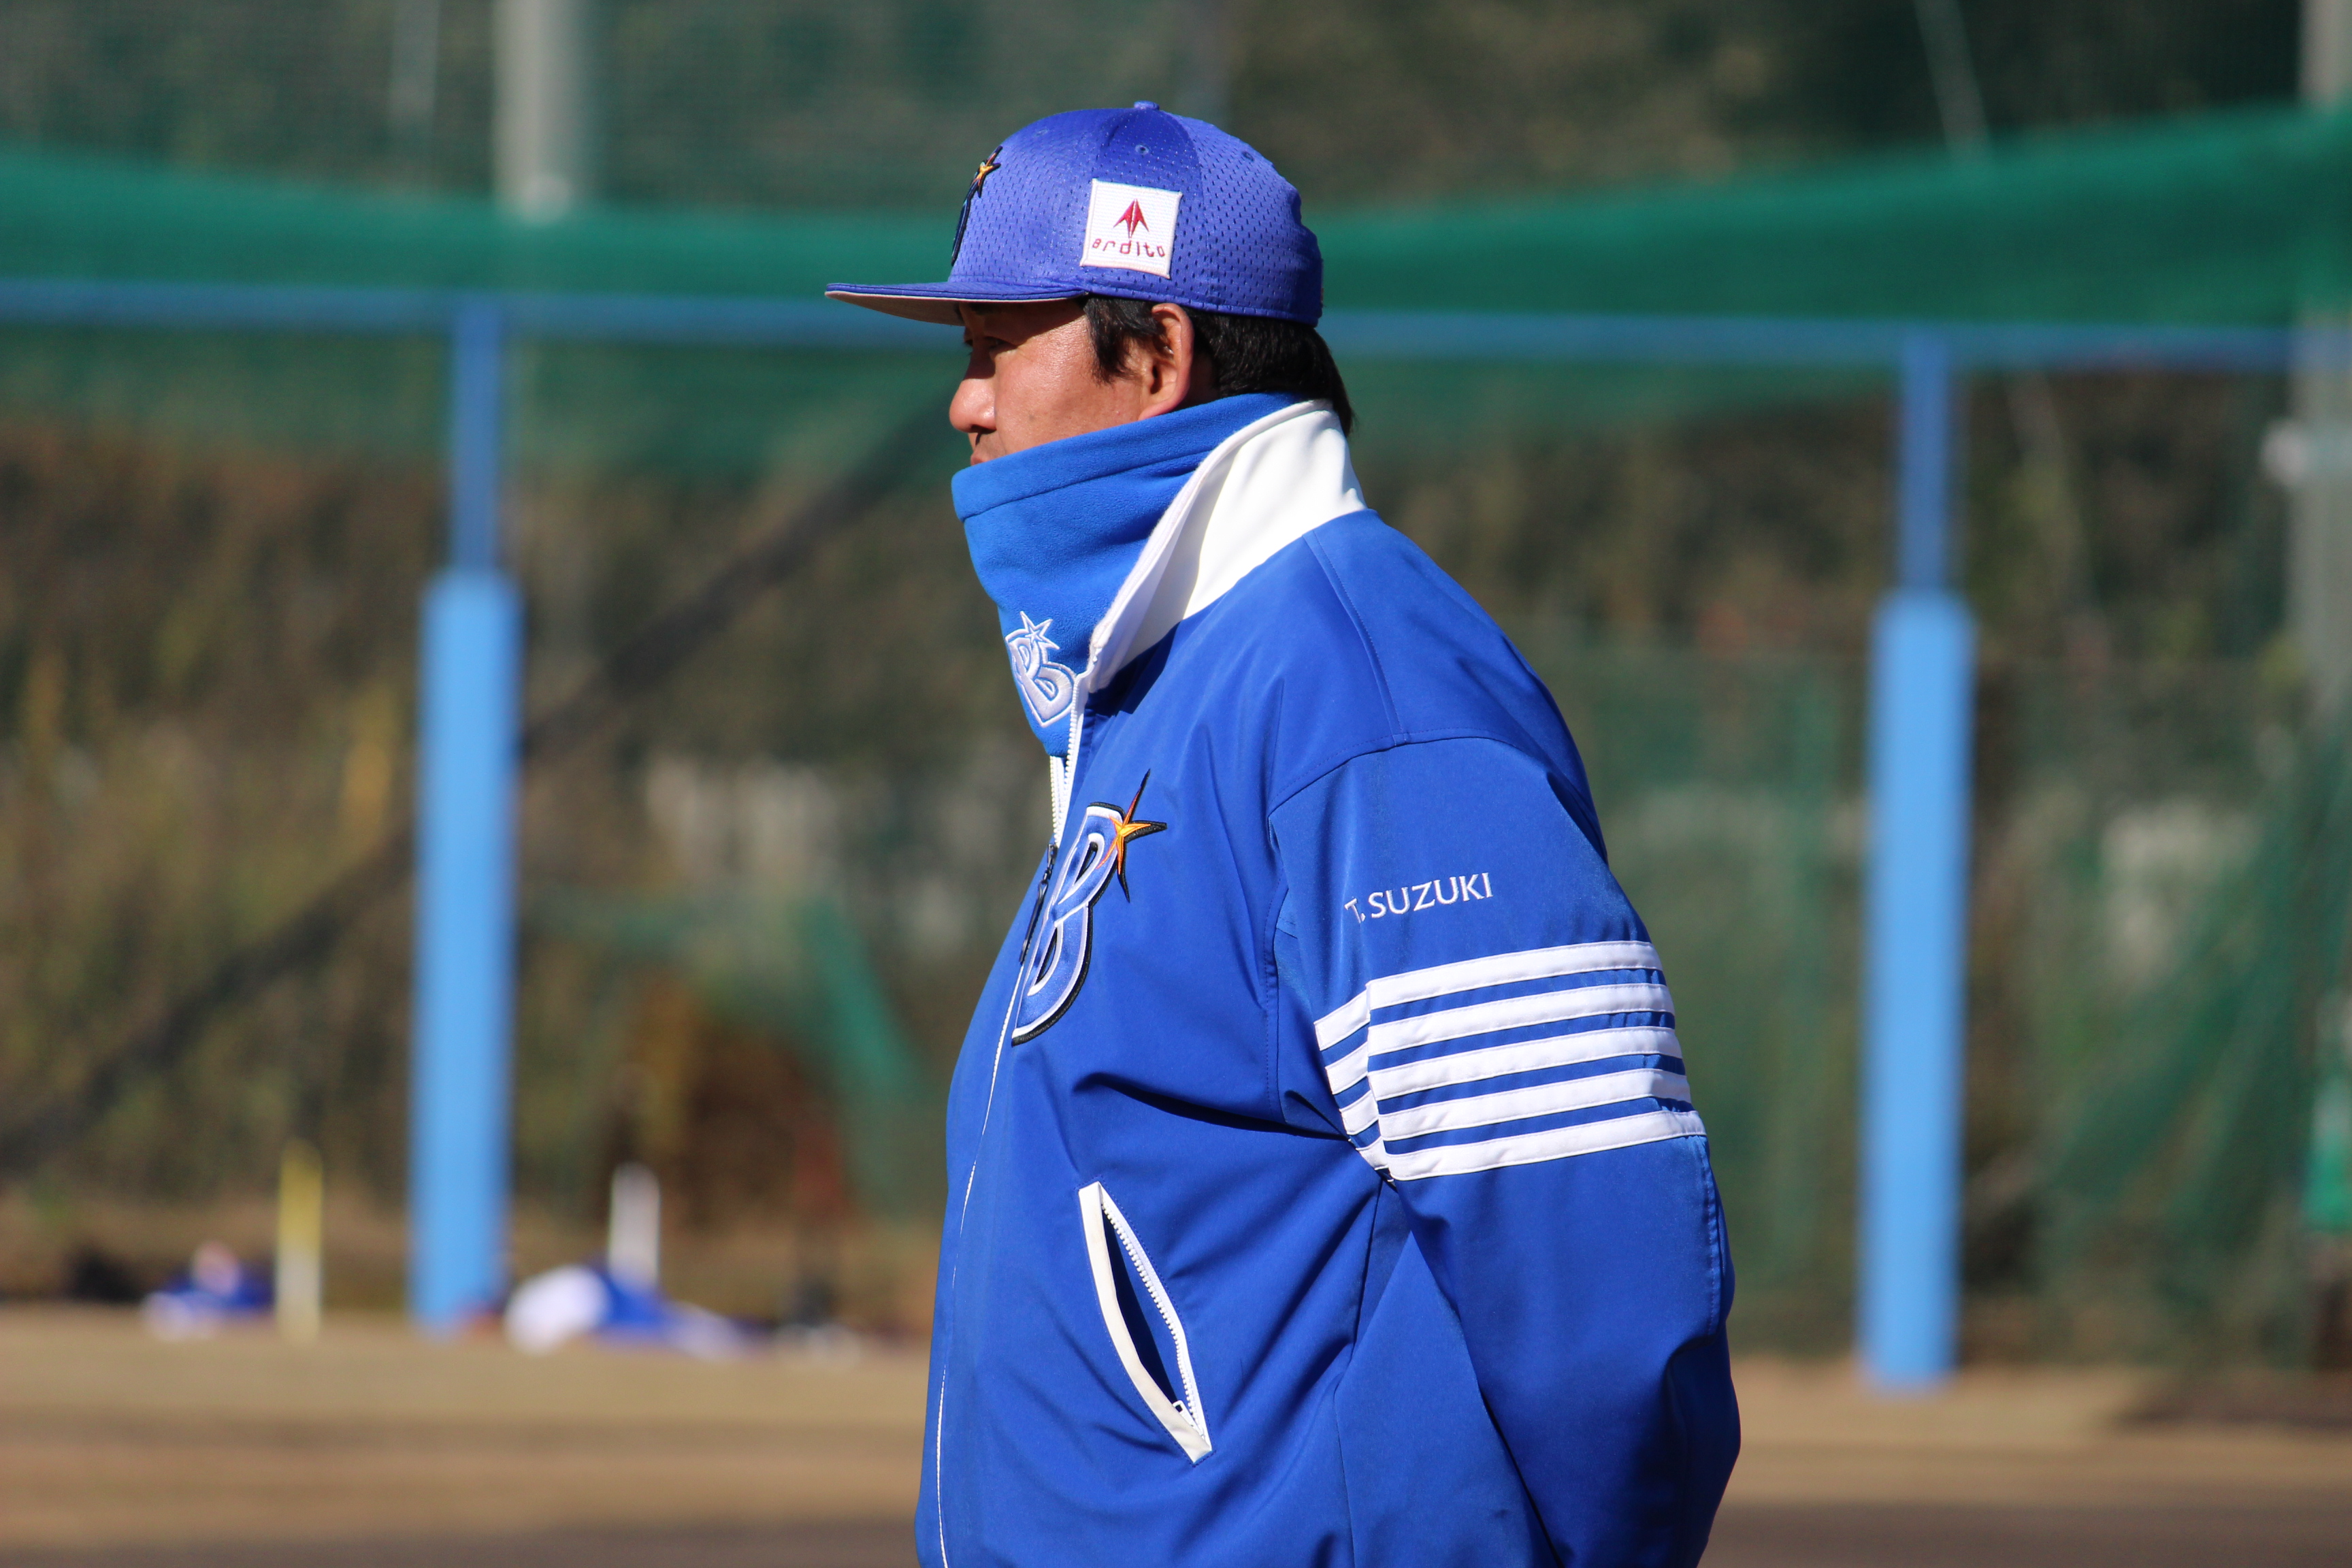 ベイスターズジュニア・鈴木尚典監督が伝える「野球の楽しさ」と「準備の大切さ」 | プロ野球 | BASEBALL GATE